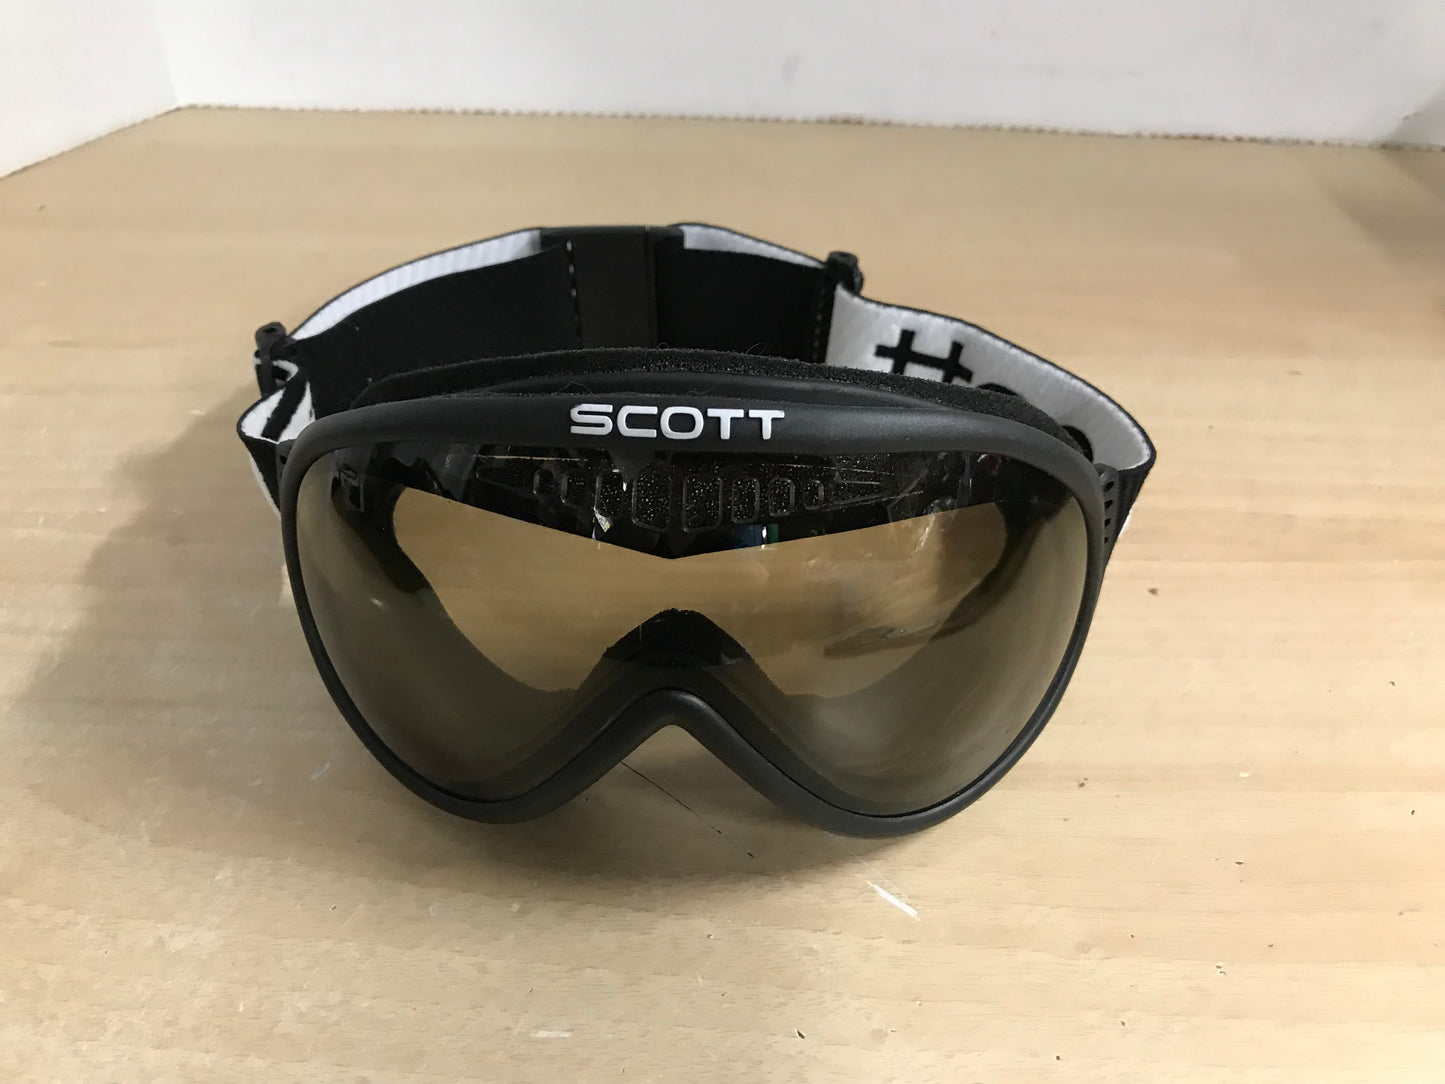 Ski Goggle Adult Size Large Scott Black White With Big Lense